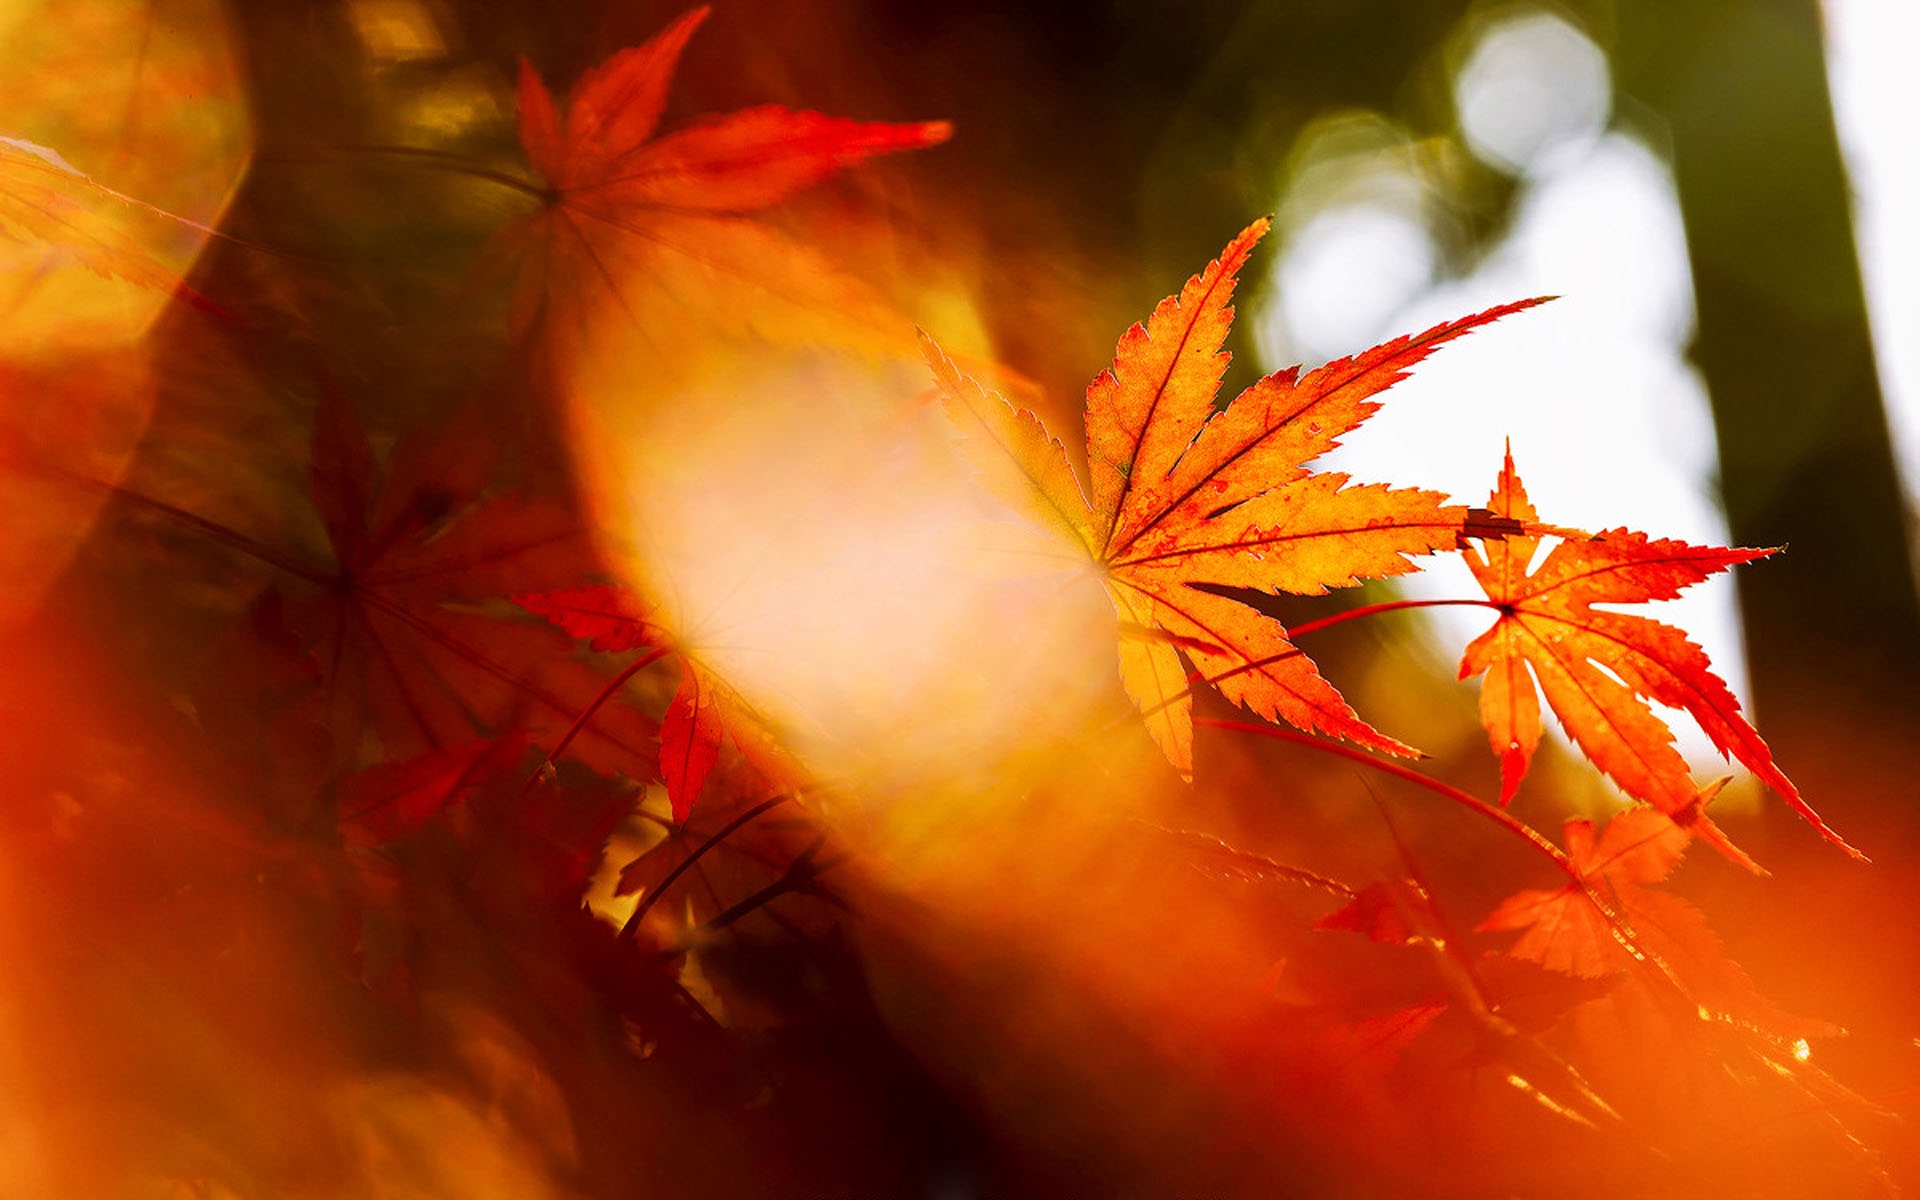 枫叶风景图片大全 唯美秋季红枫叶高清桌面壁纸